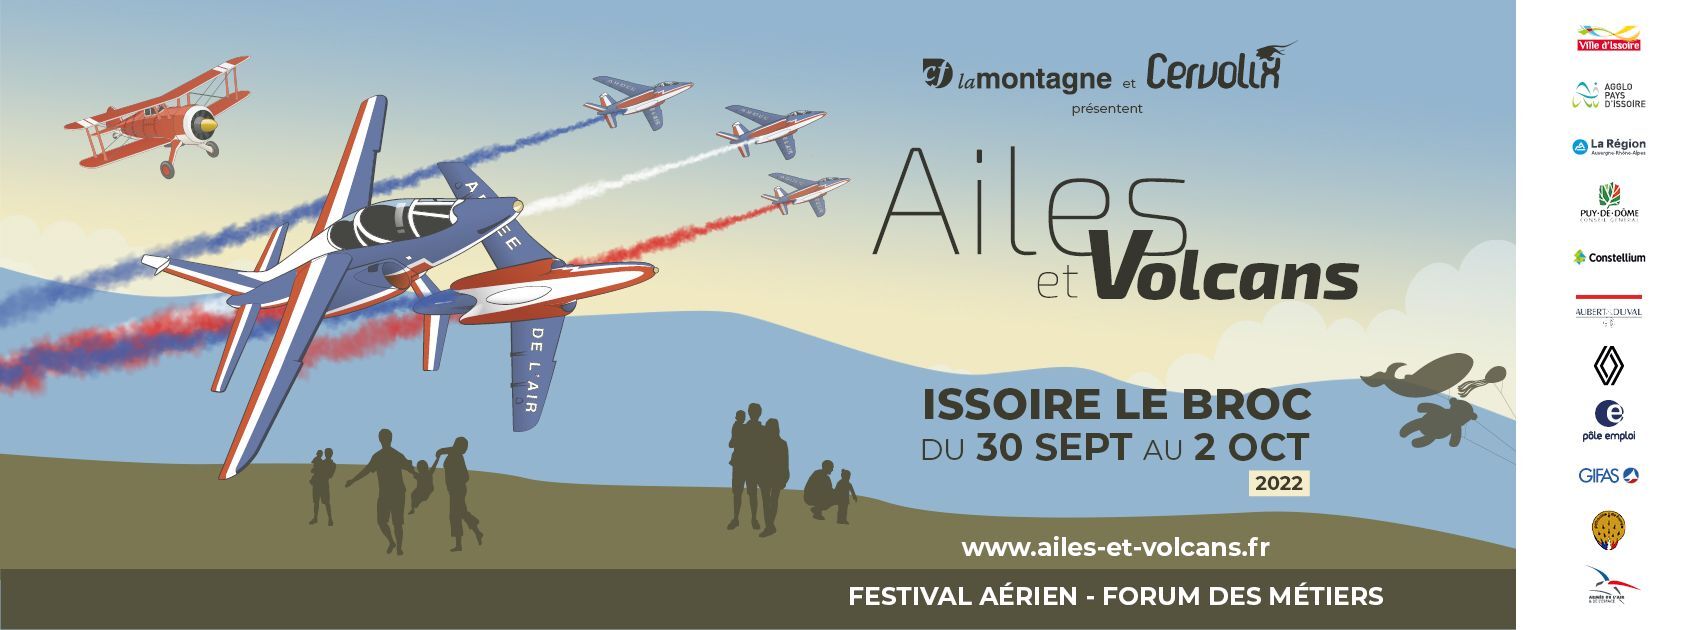 Ailes et Volcans - Issoire-Le Broc du 30 septembre au 02 octobre 2022 W0n2